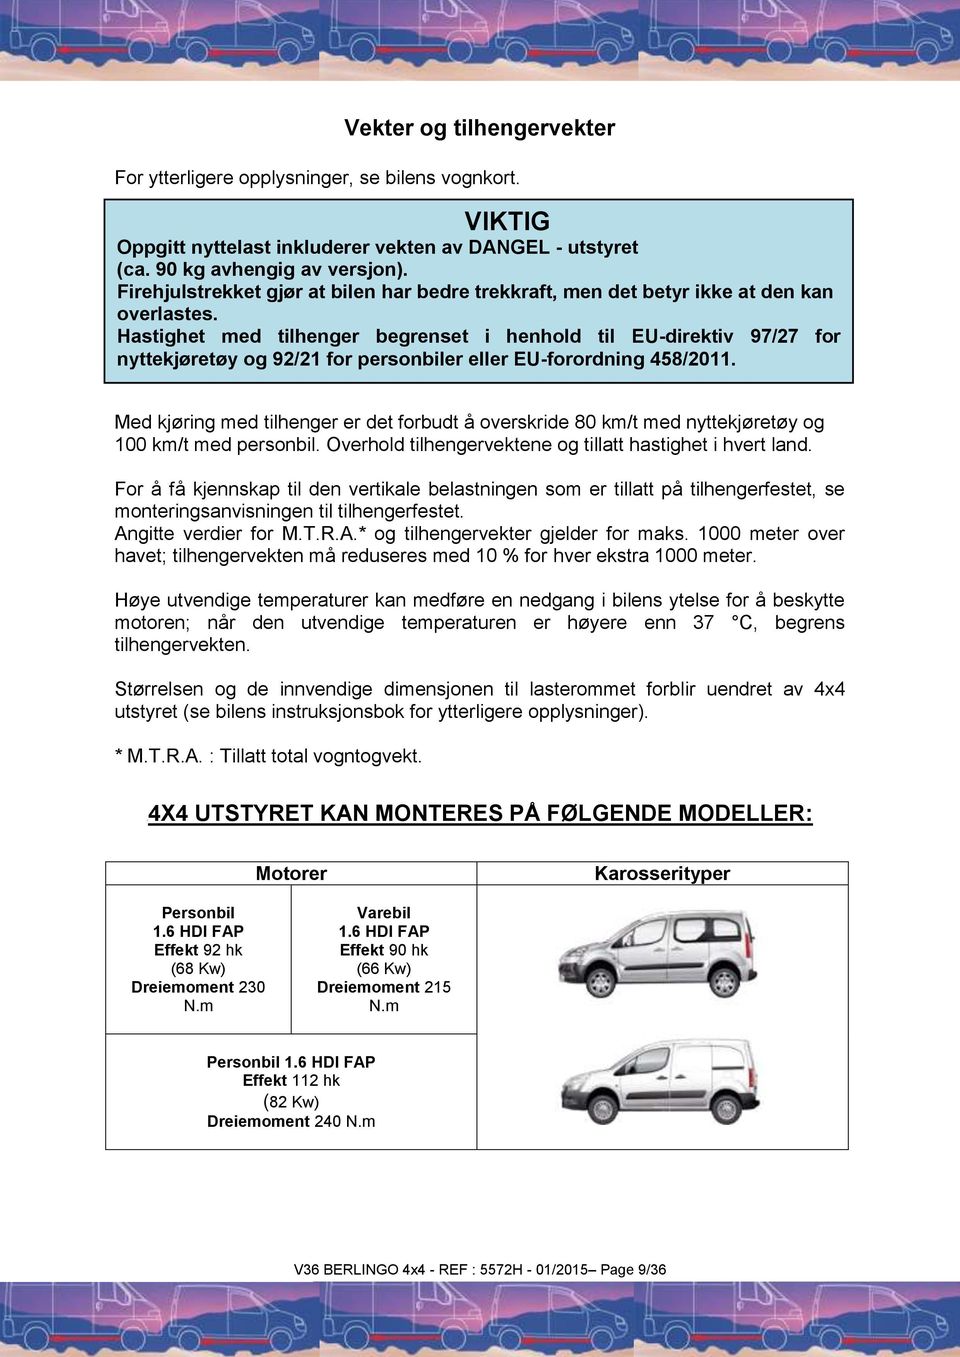 Hastighet med tilhenger begrenset i henhold til EU-direktiv 97/27 for nyttekjøretøy og 92/21 for personbiler eller EU-forordning 458/2011.